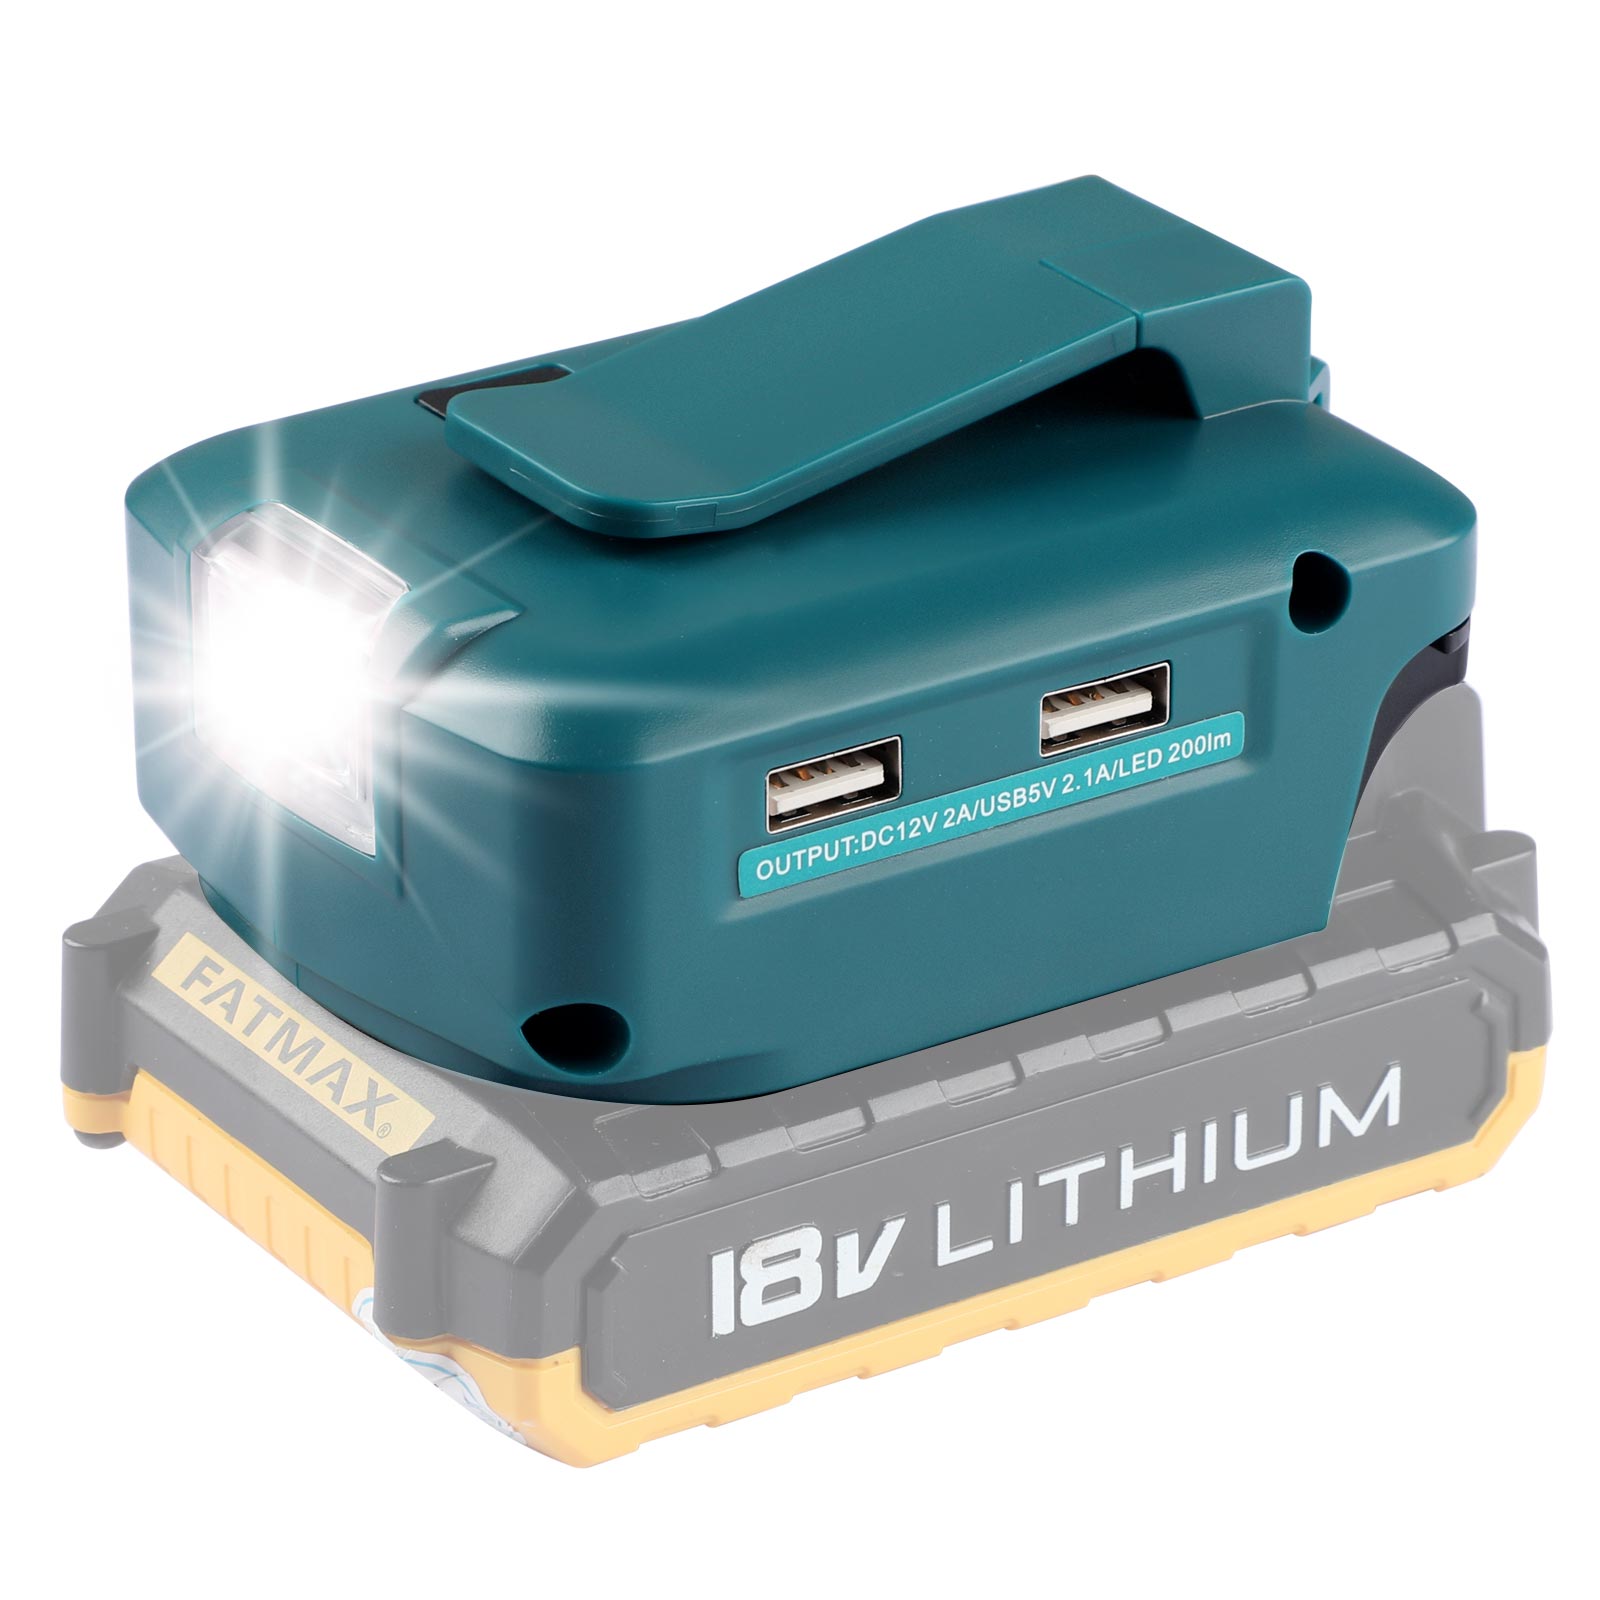 Urun մարտկոցի ադապտեր LED լույս DC պորտով և 2 USB պորտով Black&Decker 14.4-18V լիթիումային մարտկոցի էներգիայի աղբյուրի համար